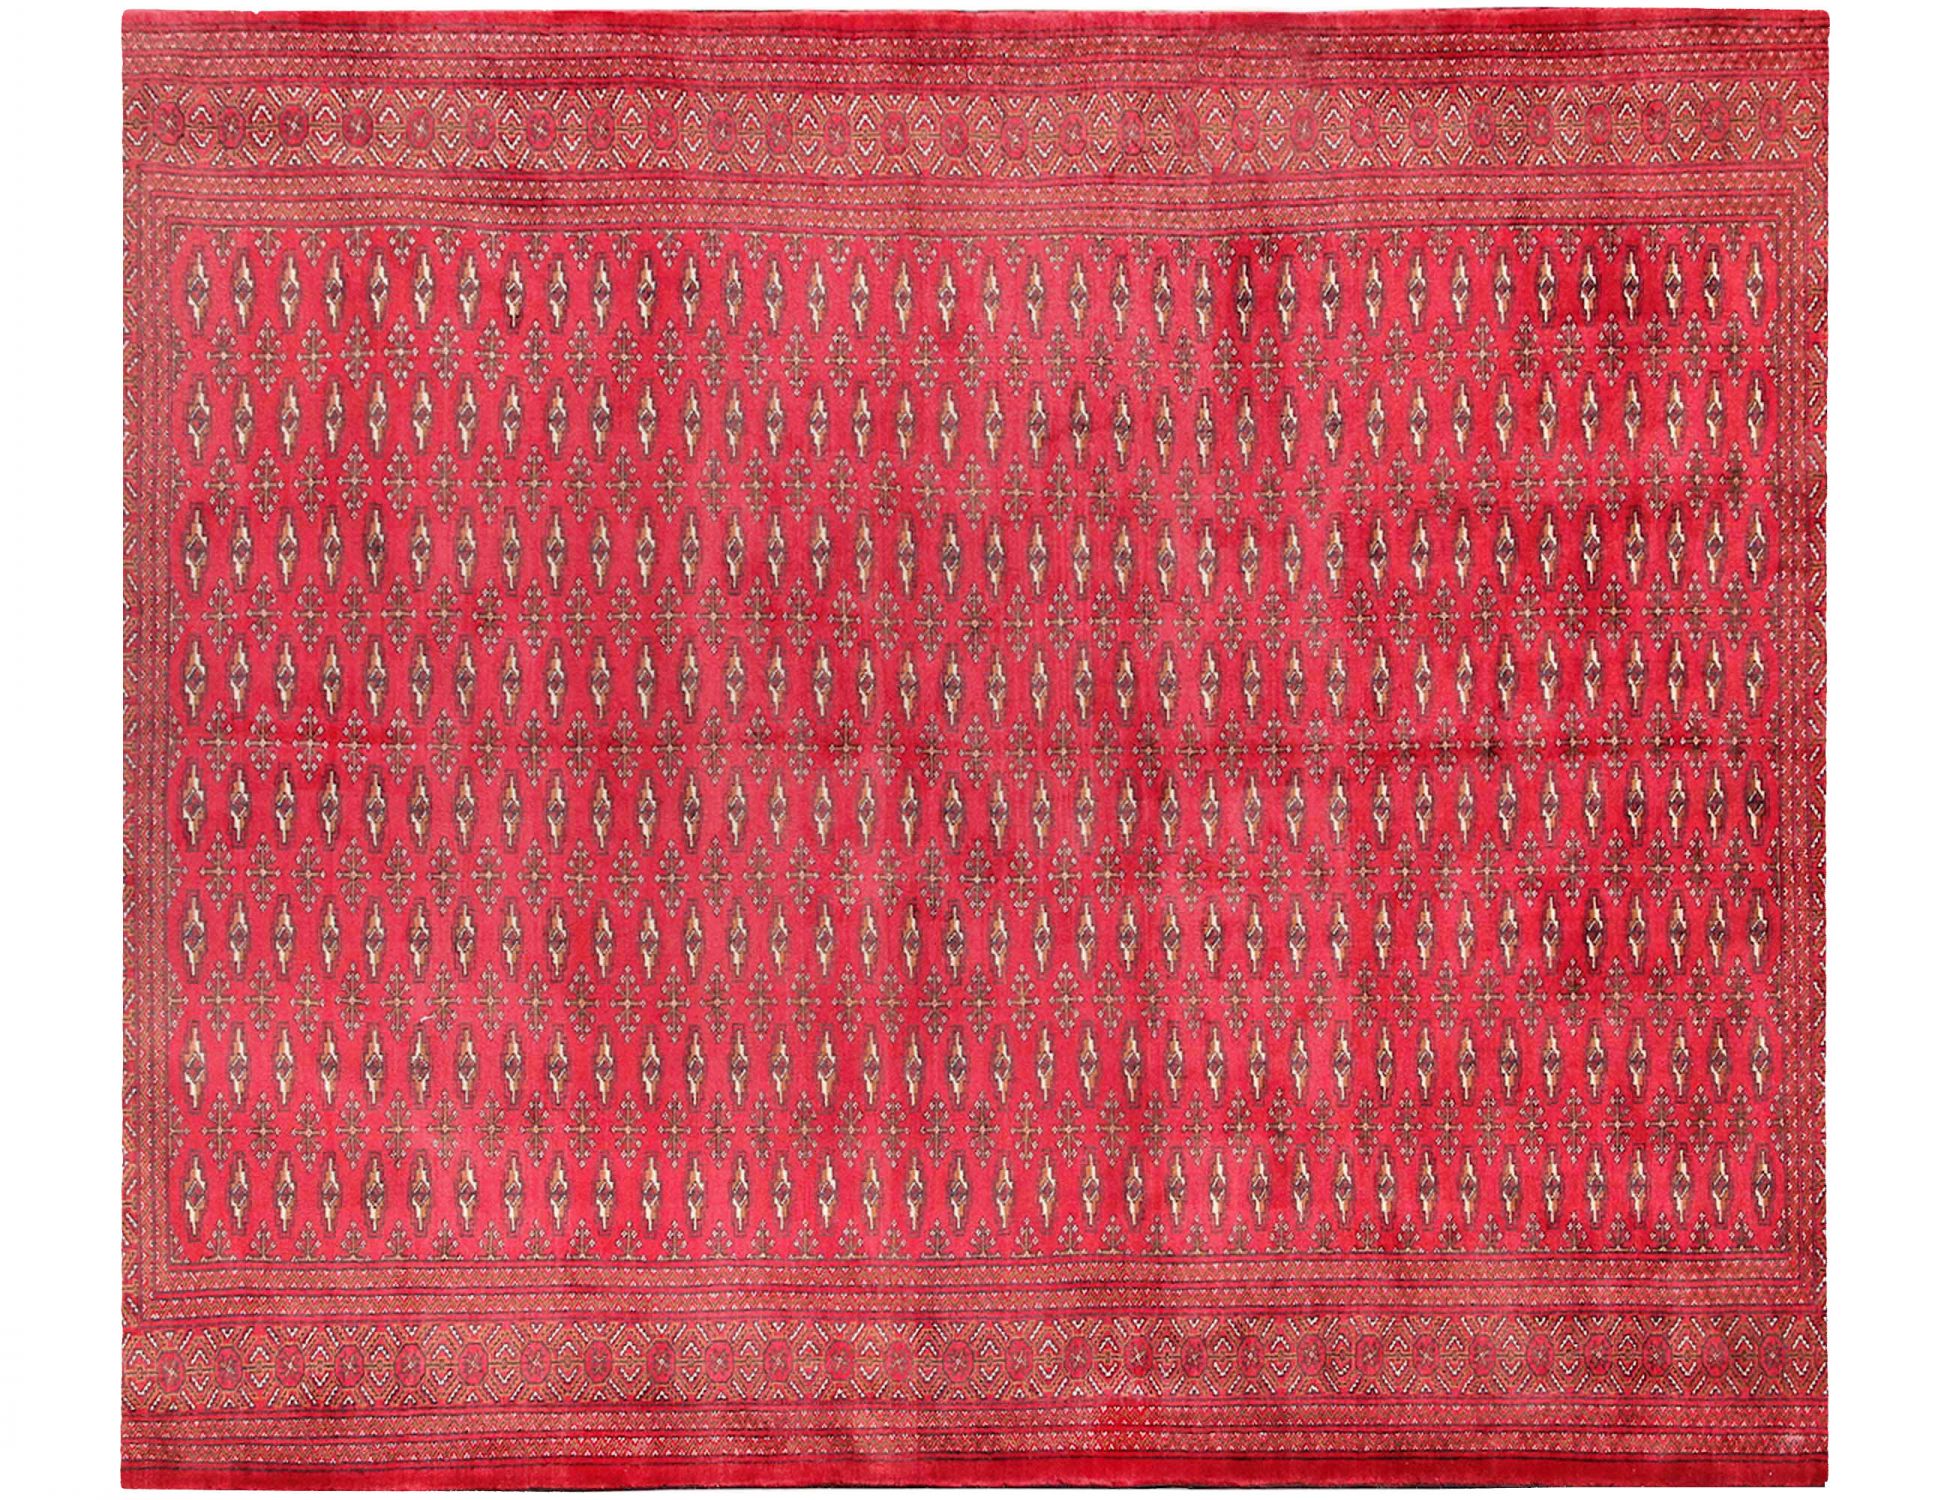  Tappeto  rosso <br/>254 x 202 cm